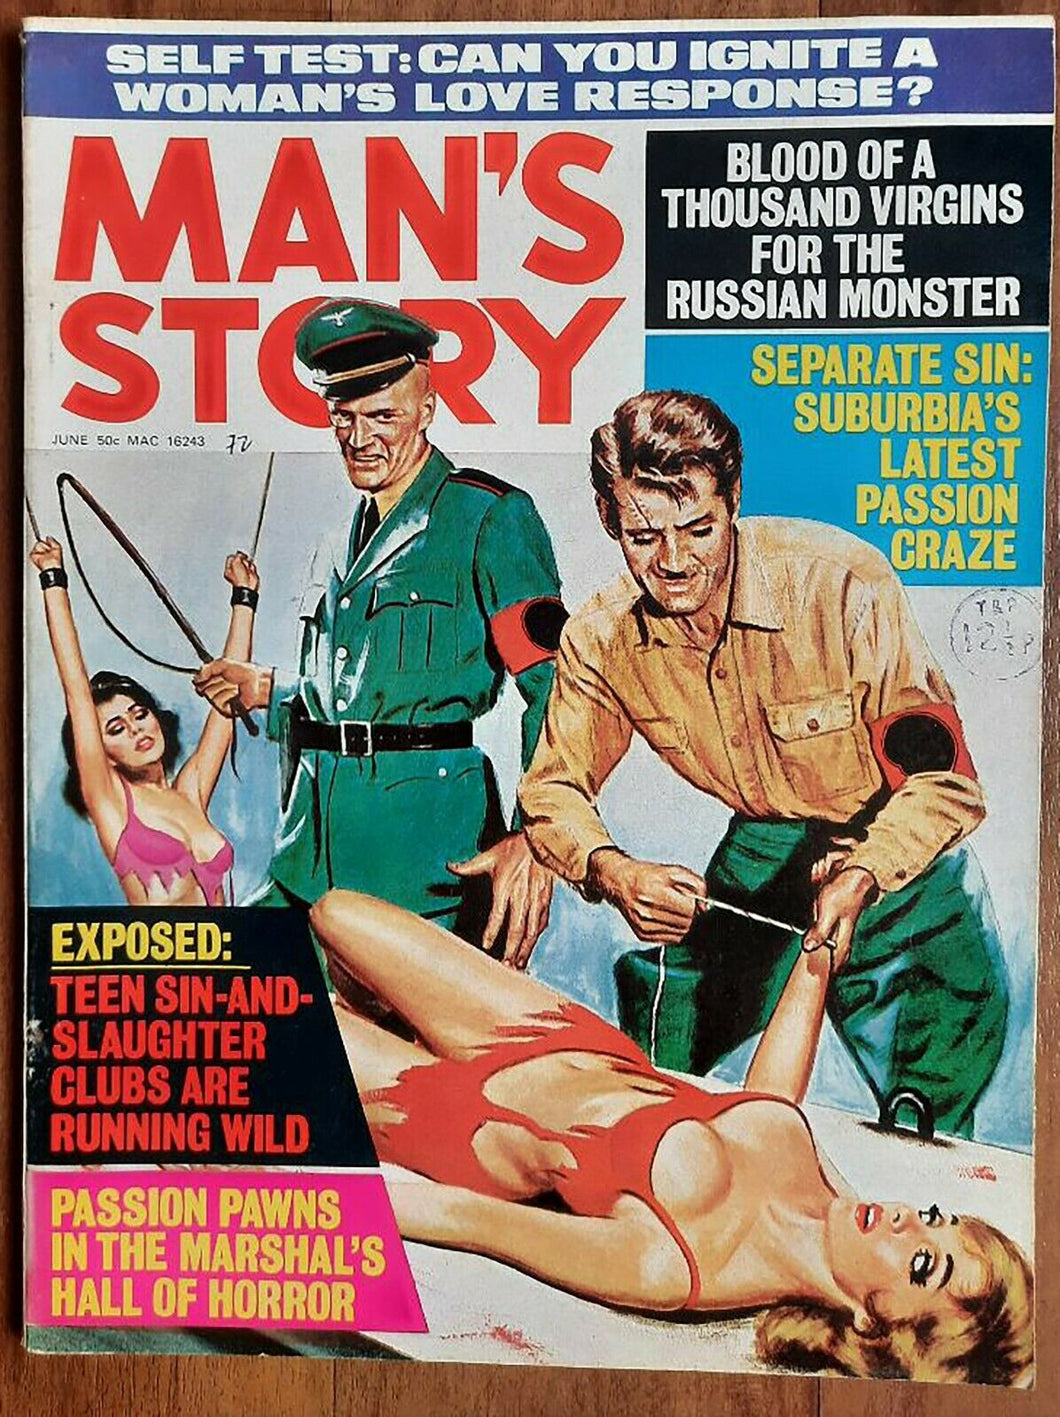 Man's Story Vol 13 No 3 June 1972